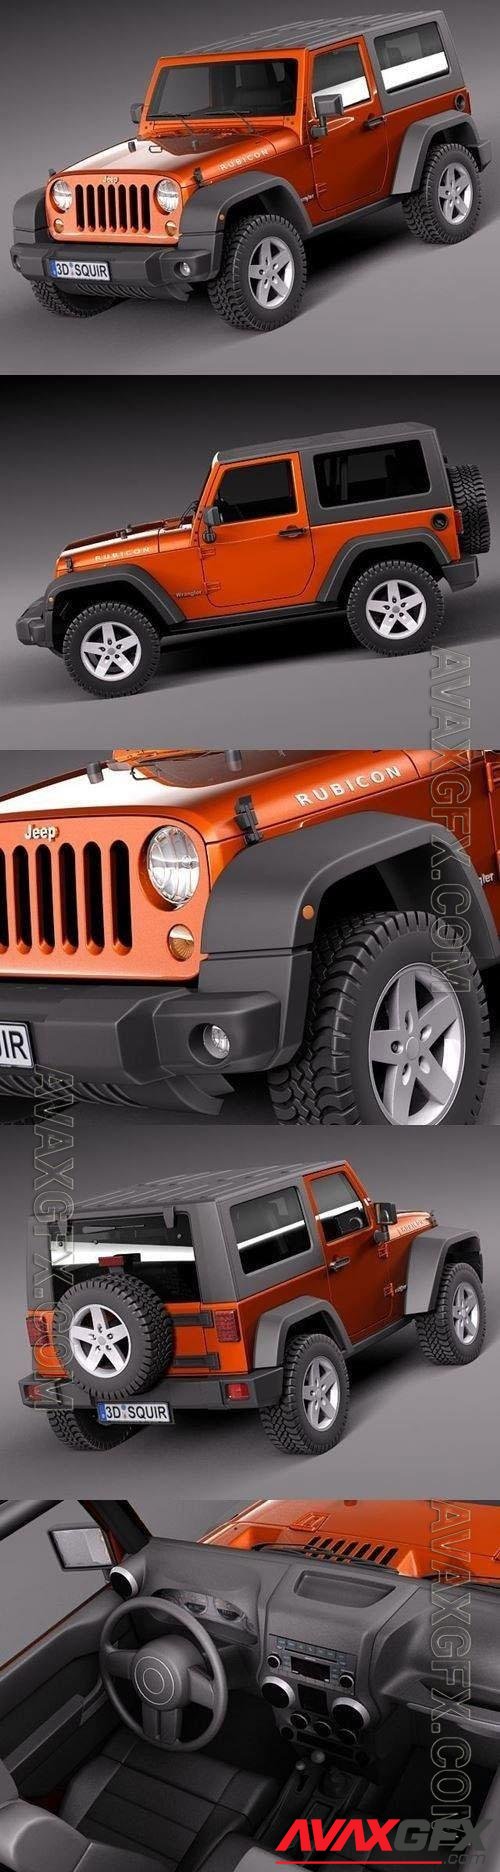 Jeep Wrangler Rubicon 2012 (Blender) - 3d model